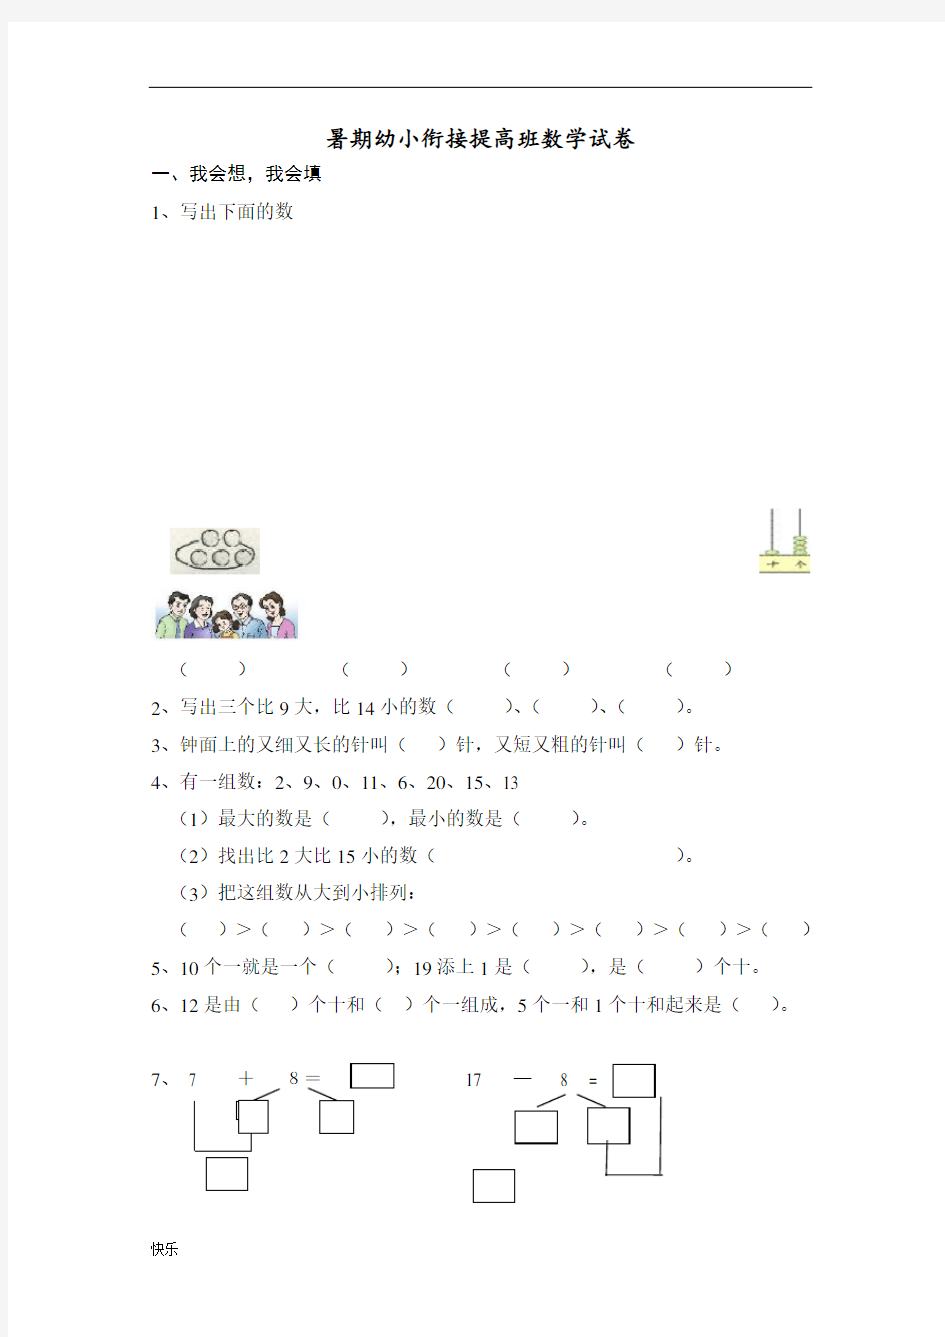 (完整版)小学一年级数学试卷(完整打印版)【精】